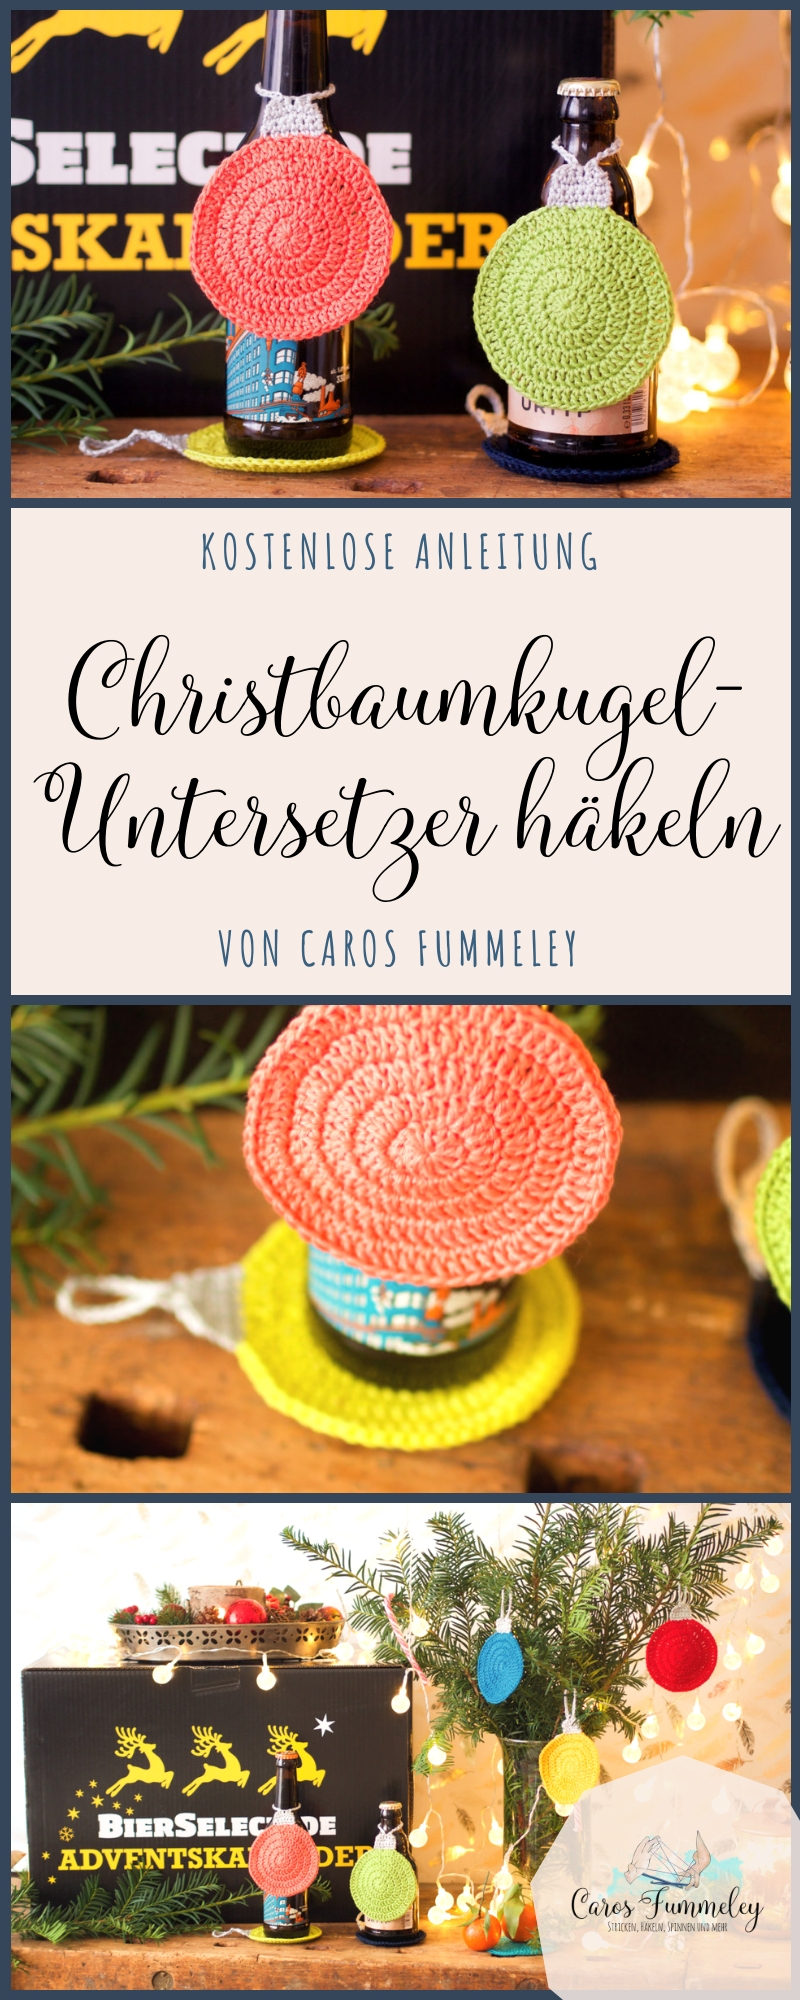 Kostenlose Häkelanleitung auf deutsch für Untersetzer in Christbaumkugel Form